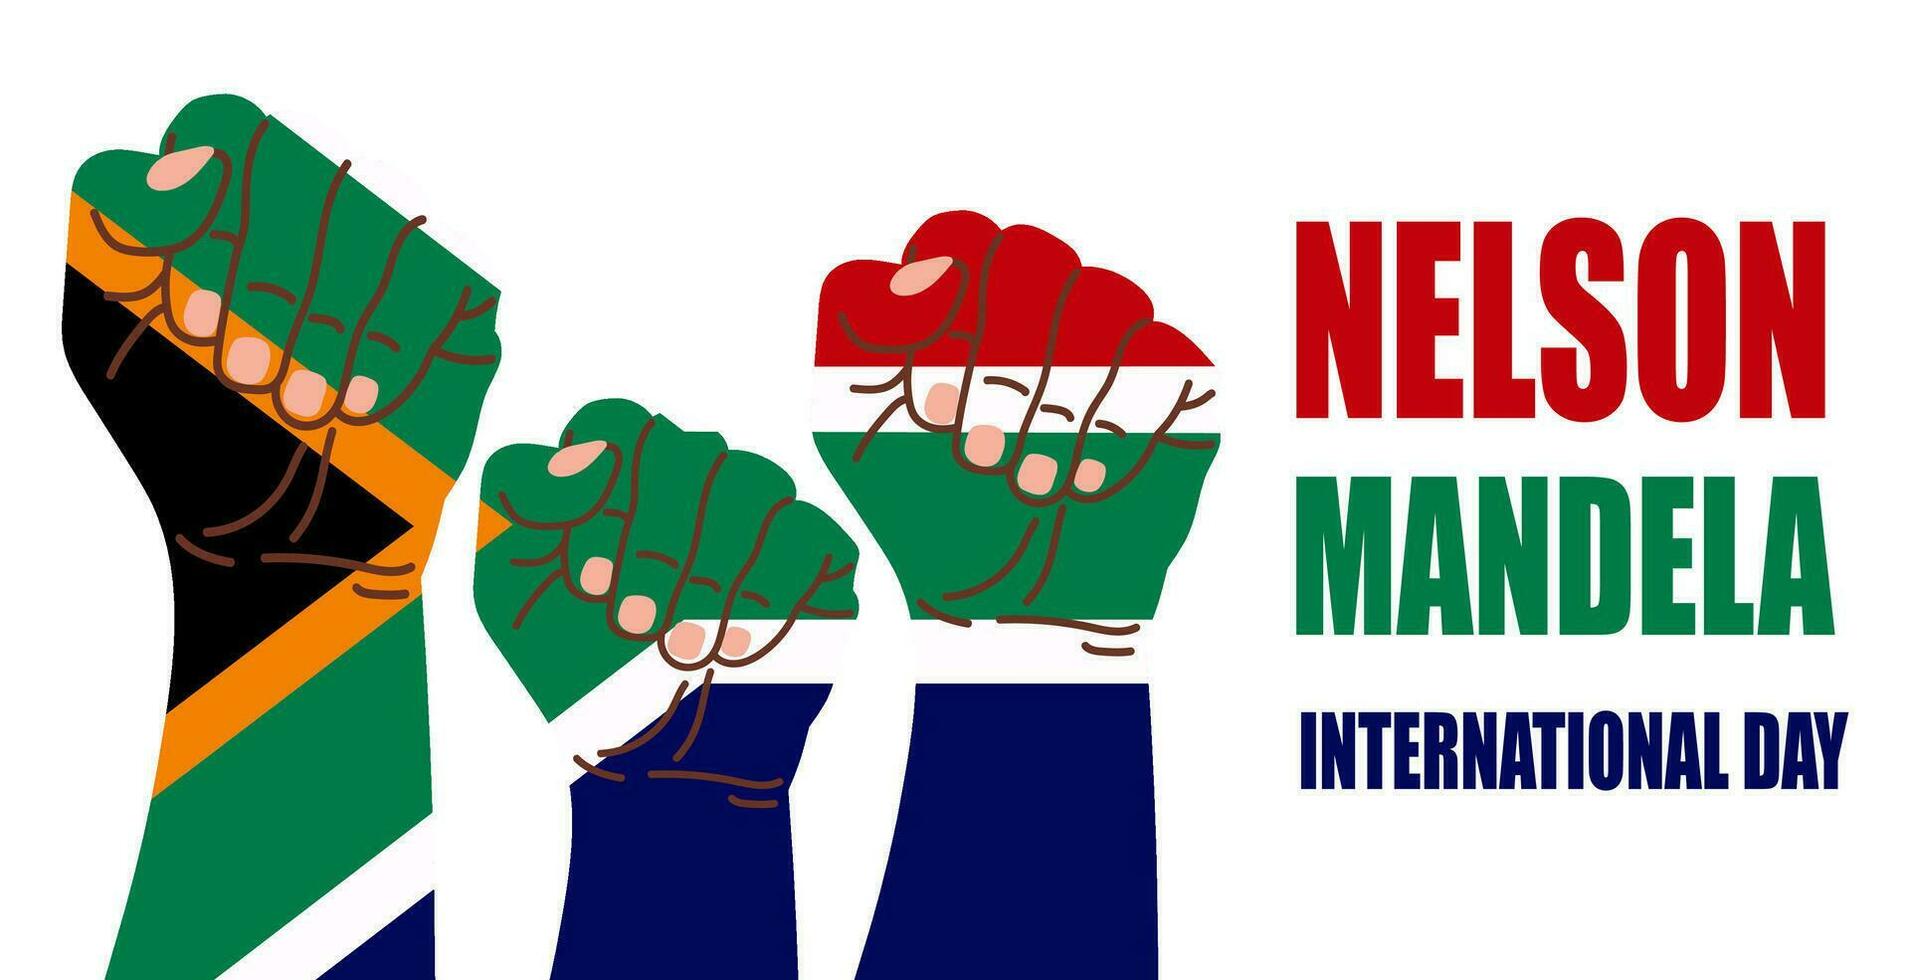 International Nelson Mandela Tag Vektor Illustration mit Süd Afrika Flagge und Hände zeigen Stärke, Einheit, und Leistung. perfekt zum Poster oder Banner